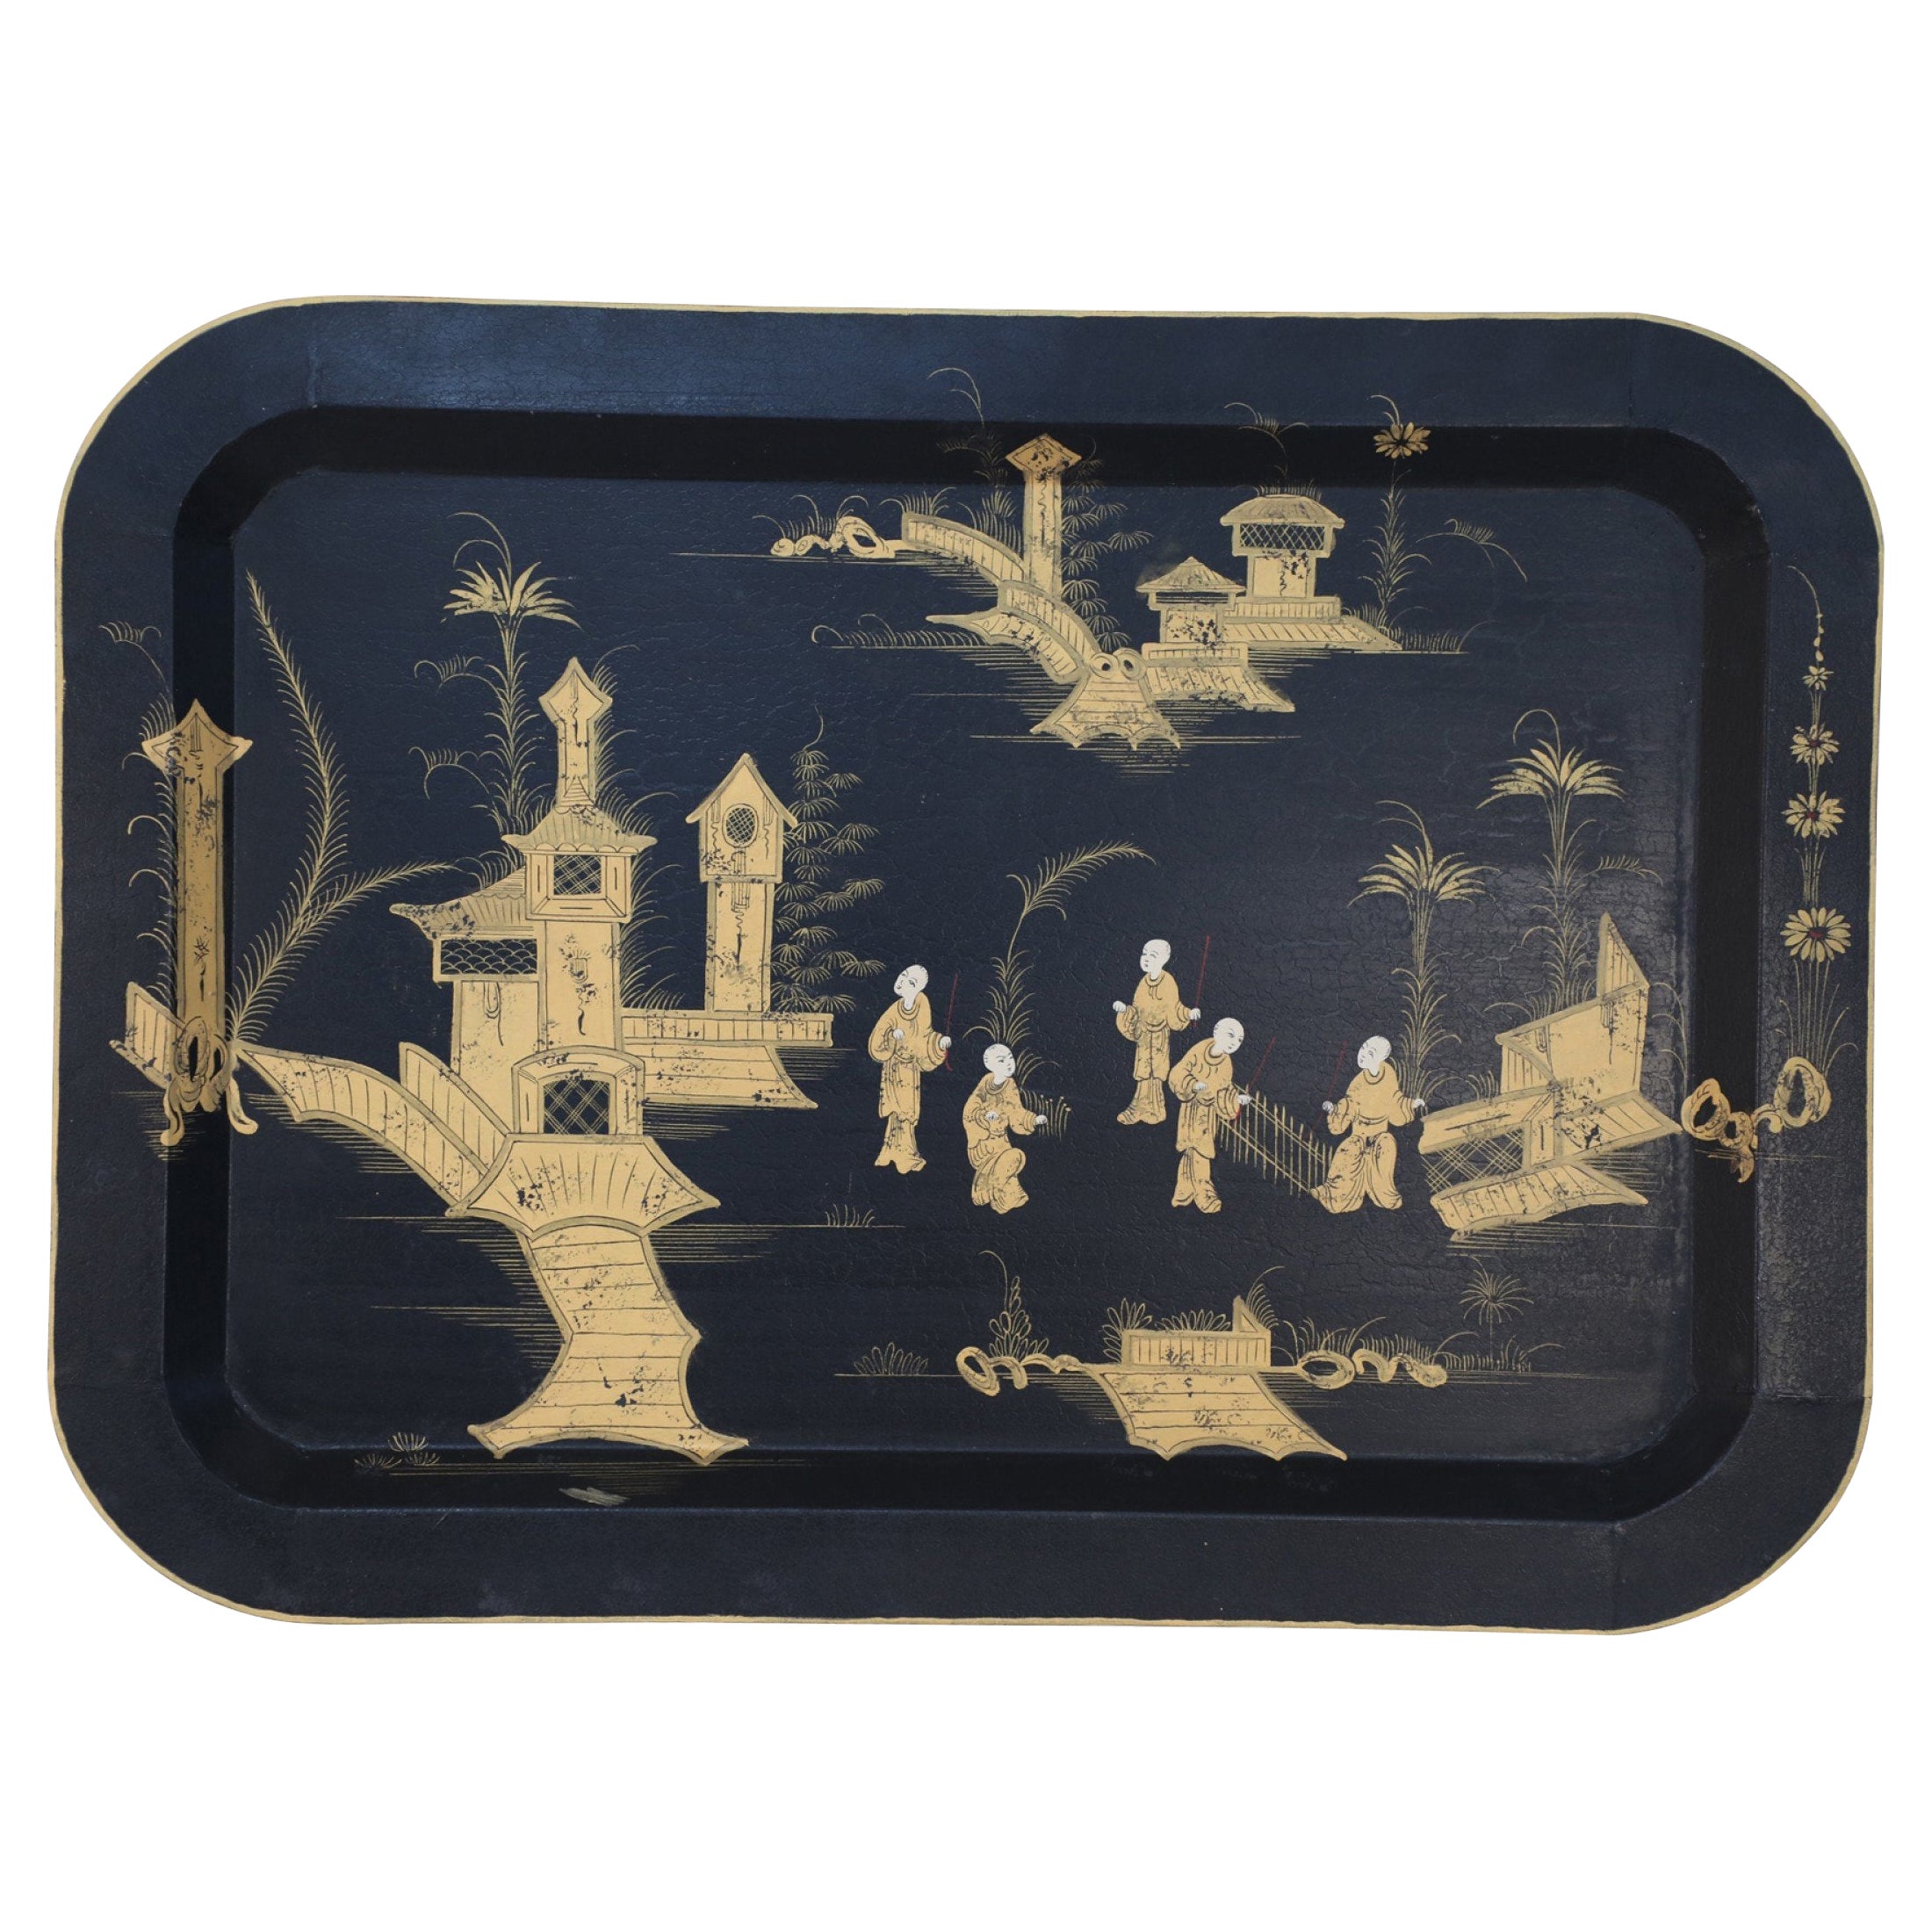 Chinesisches, rechteckiges Tablett mit Monestary-Szene aus schwarzem und goldenem Zinn